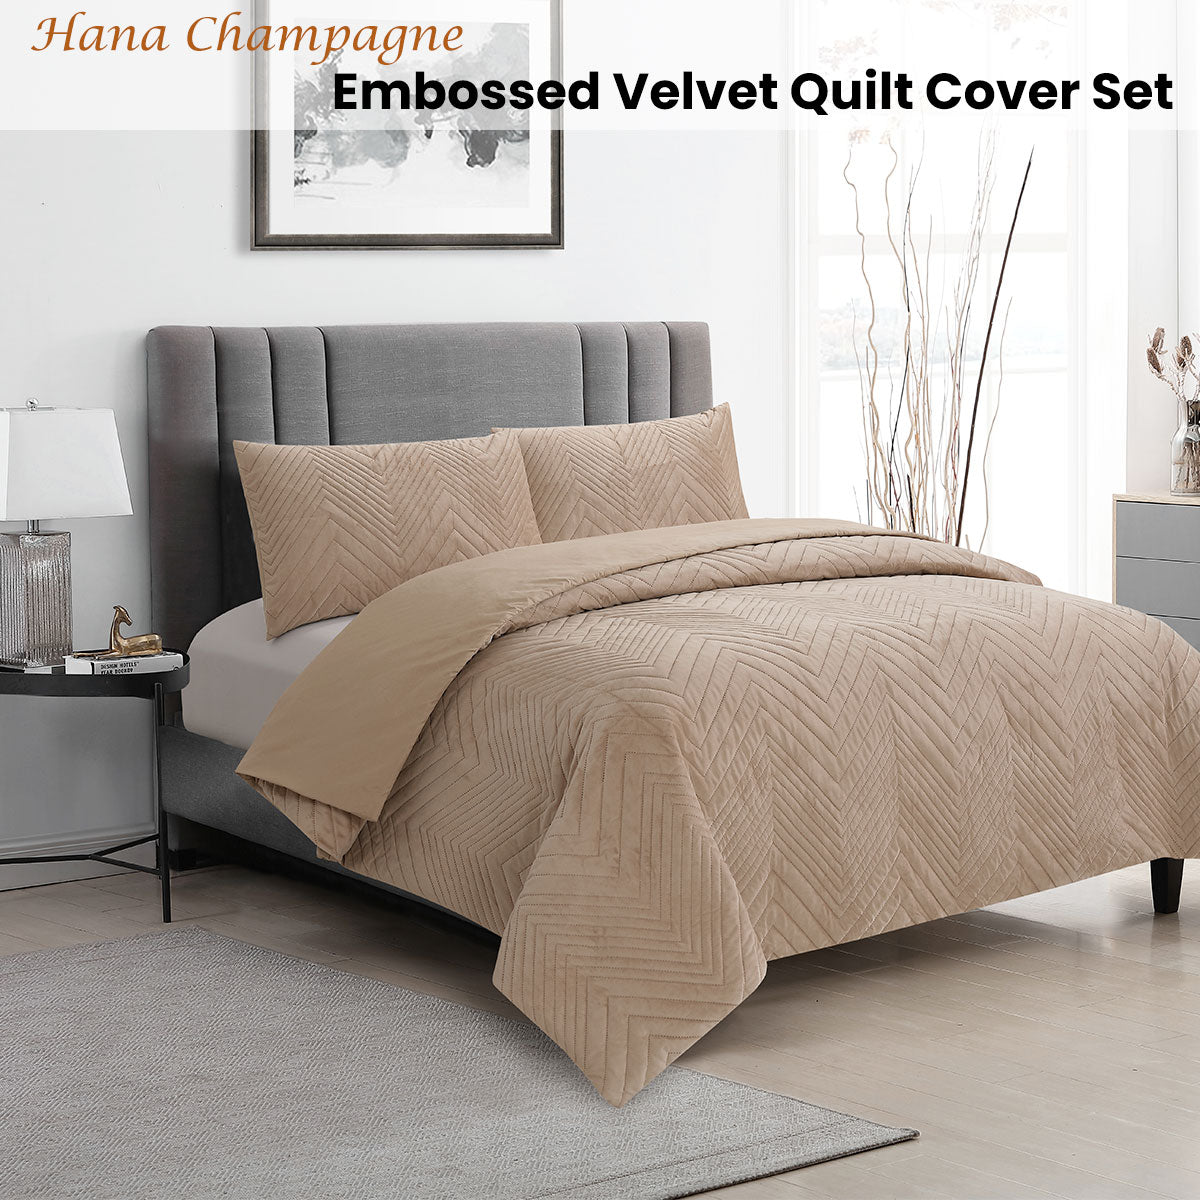 QUEEN Embossed Velvet Quilt Cover Set - Champagne